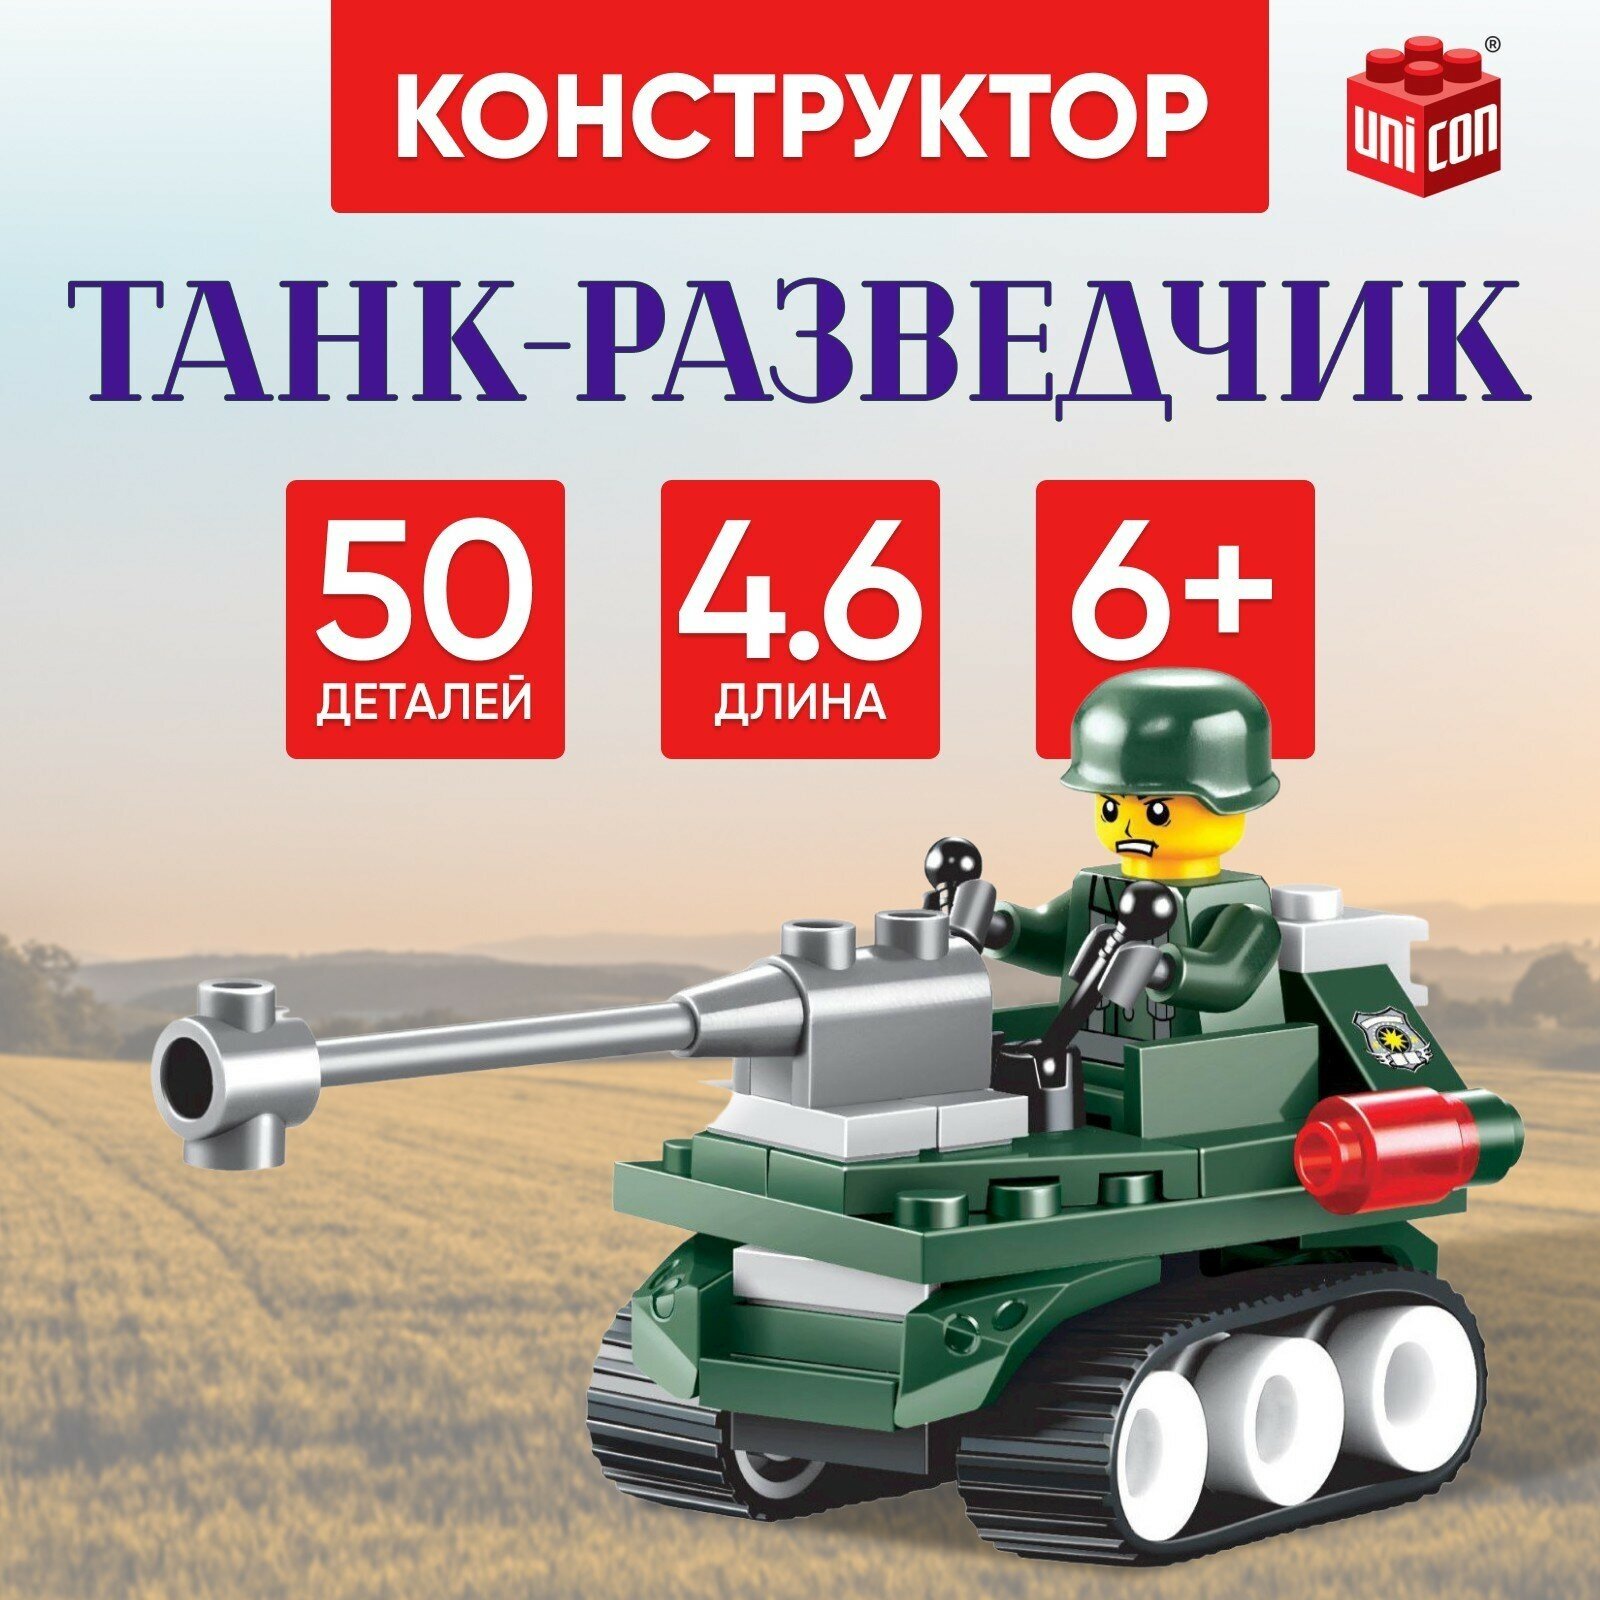 Конструктор "Танк-разведчик", армия, 50 деталей, длина: 4.6 см, совместим с LEGO, для детей и малышей